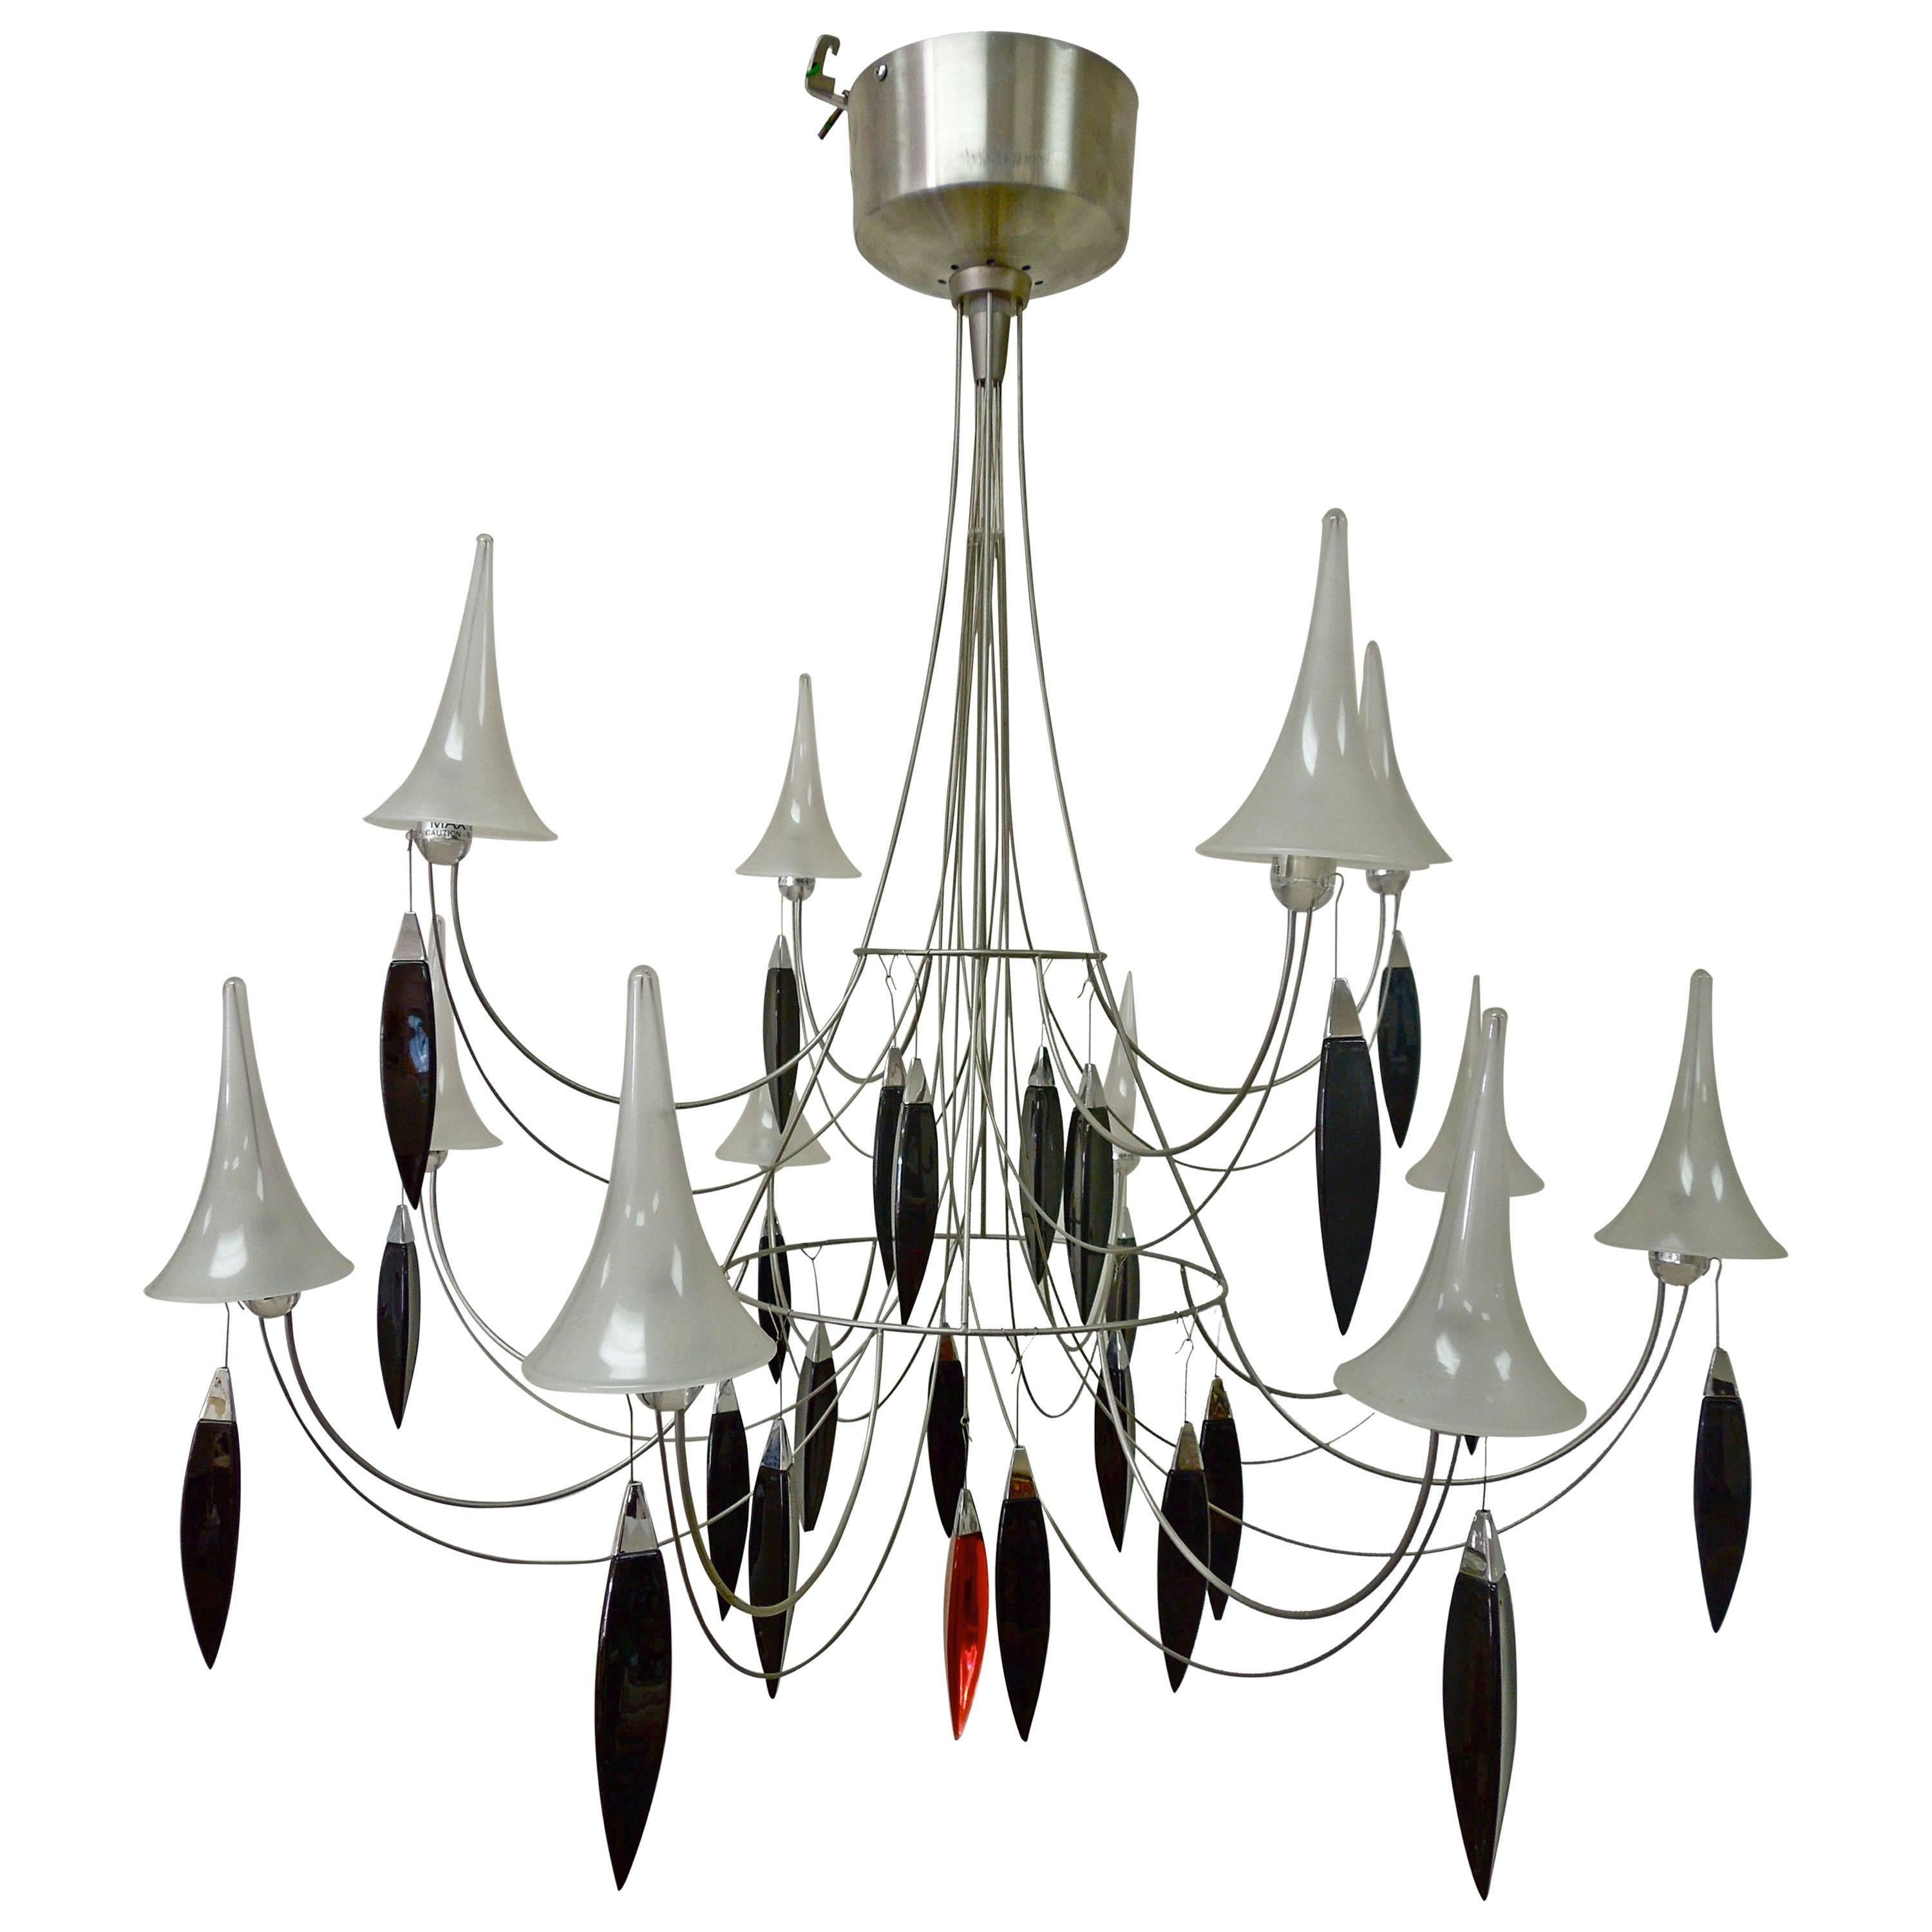 Important Modern Designer "Plume" Twelve-Light Chandelier by Baccarat